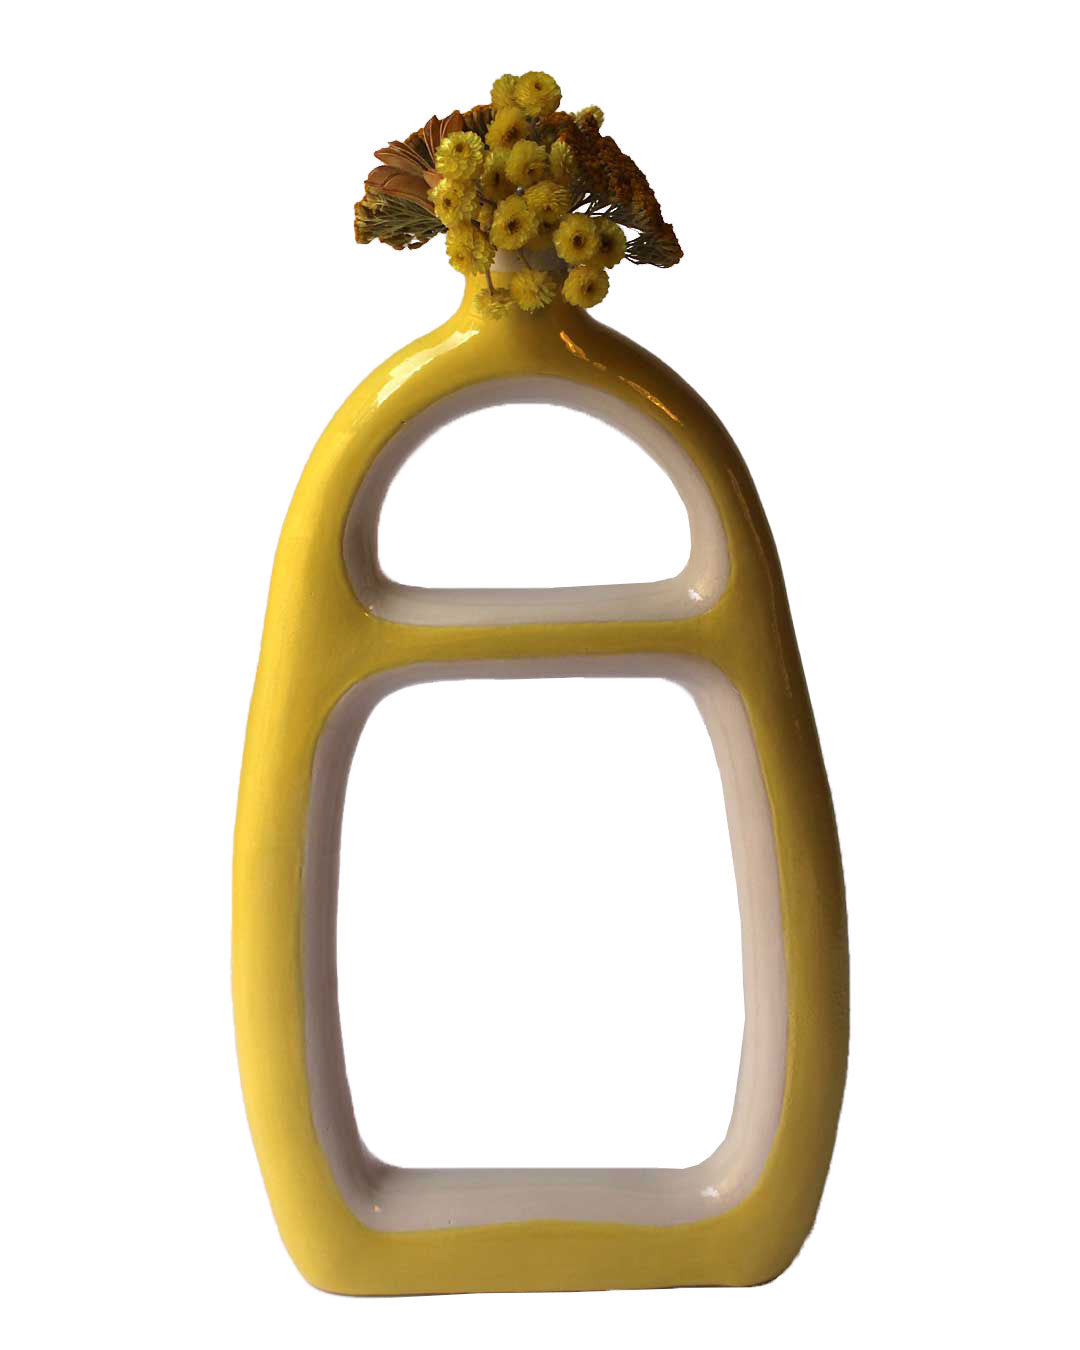 Earthenware light yellow vase